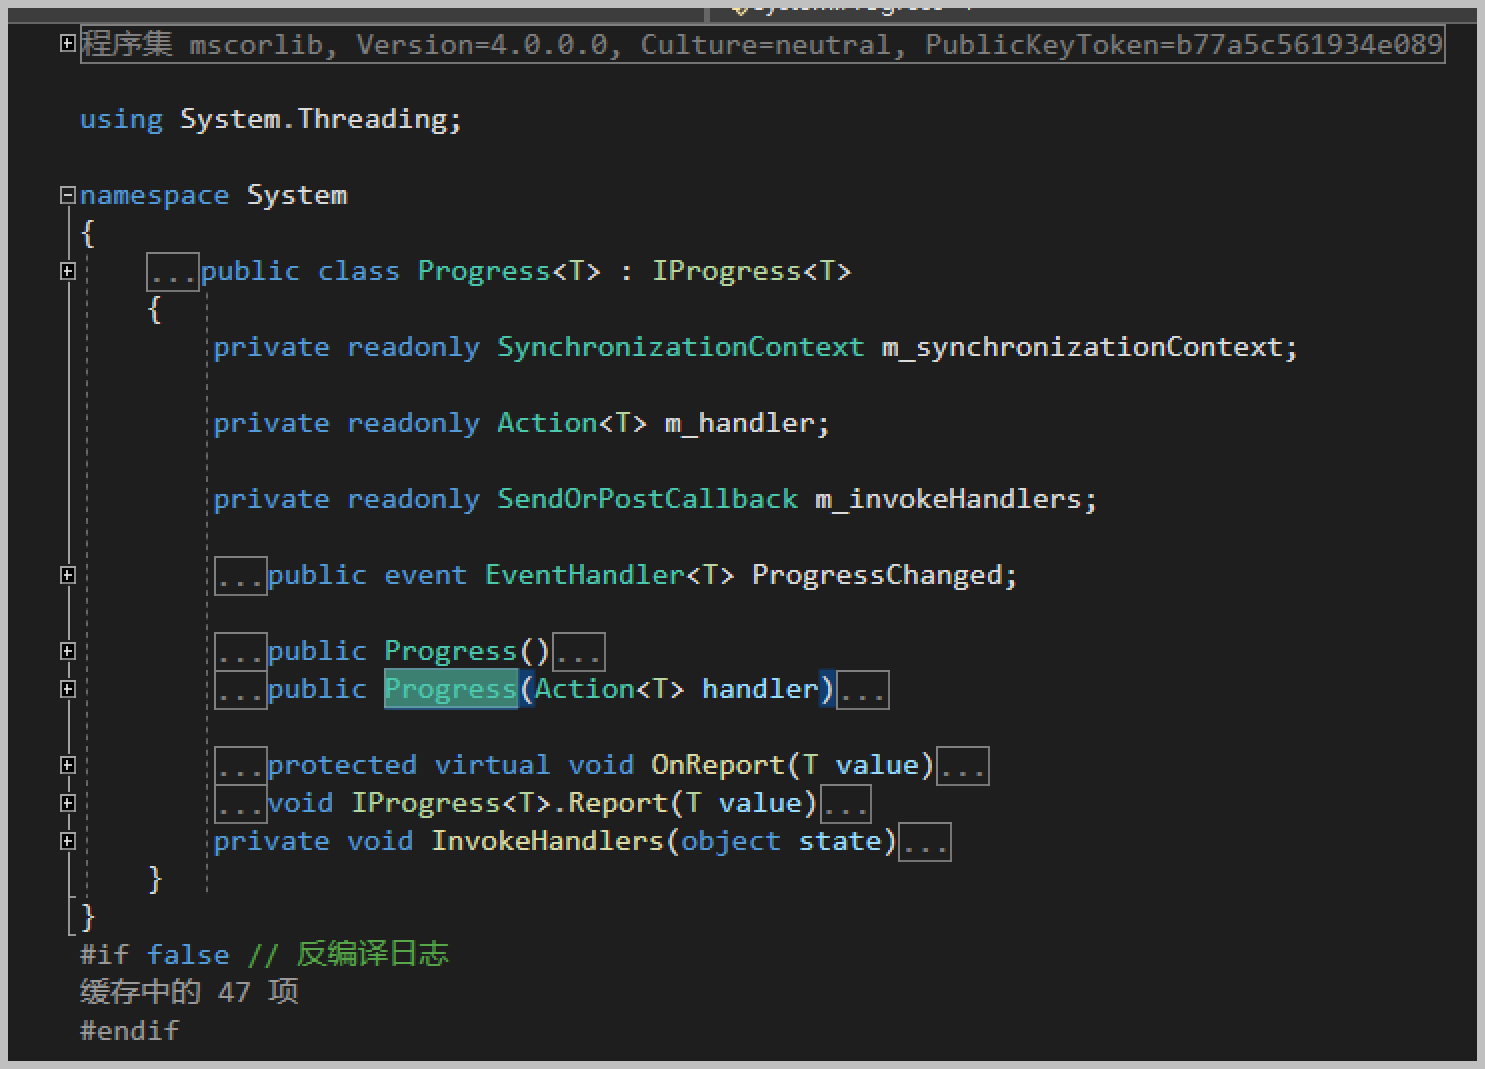 在Winform开发中，使用Async-Awati异步任务处理代替BackgroundWorker